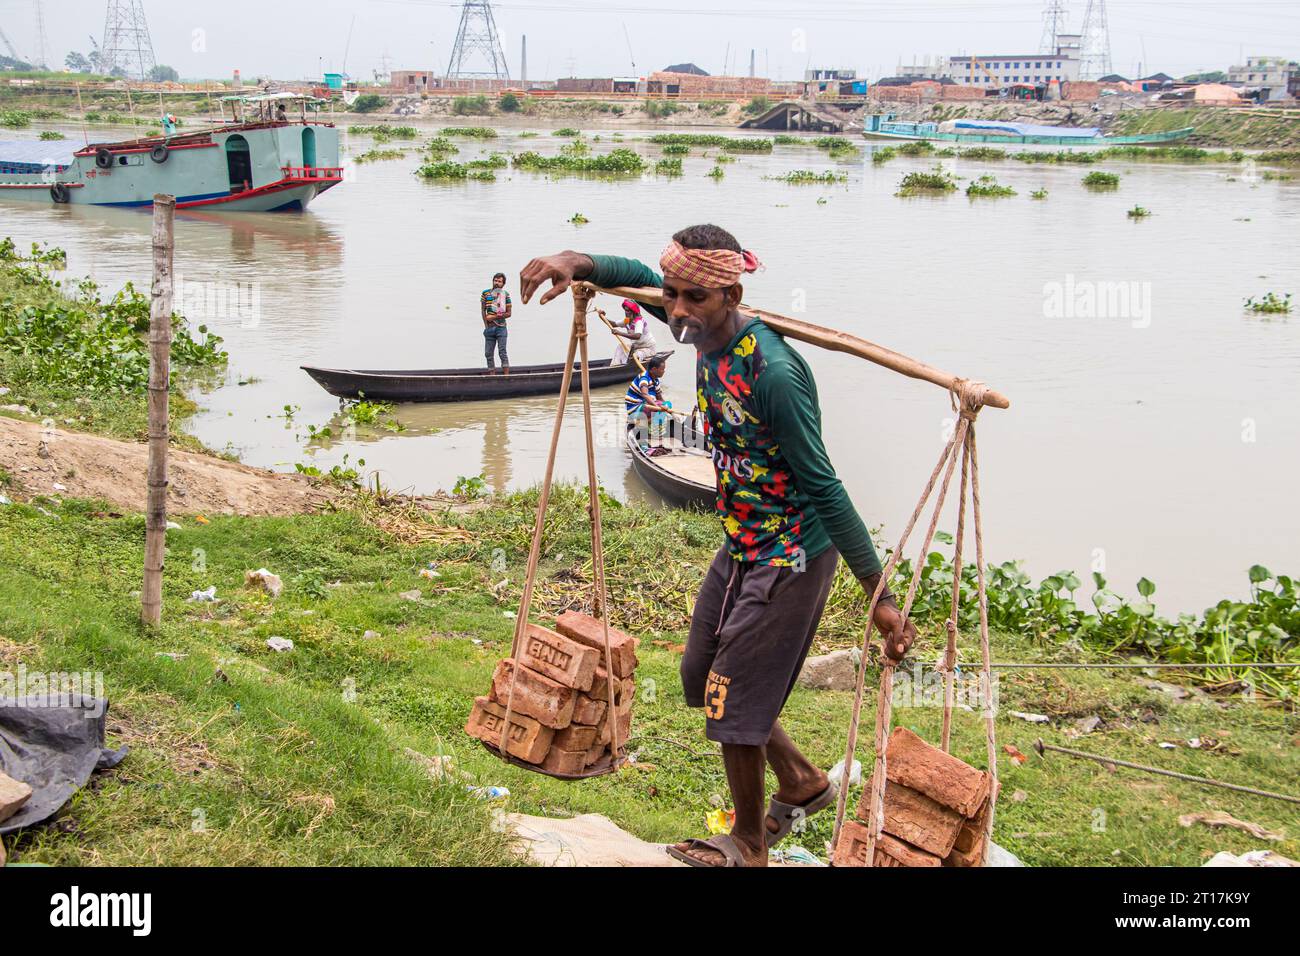 Menschen, die Ziegelsteine vom Boot abladen, das Bild, das am 29. Mai 2022 aufgenommen wurde, aus Amen Bazar, Bangladesch, wo Arbeiter schwere Ziegelsteine abladen Stockfoto